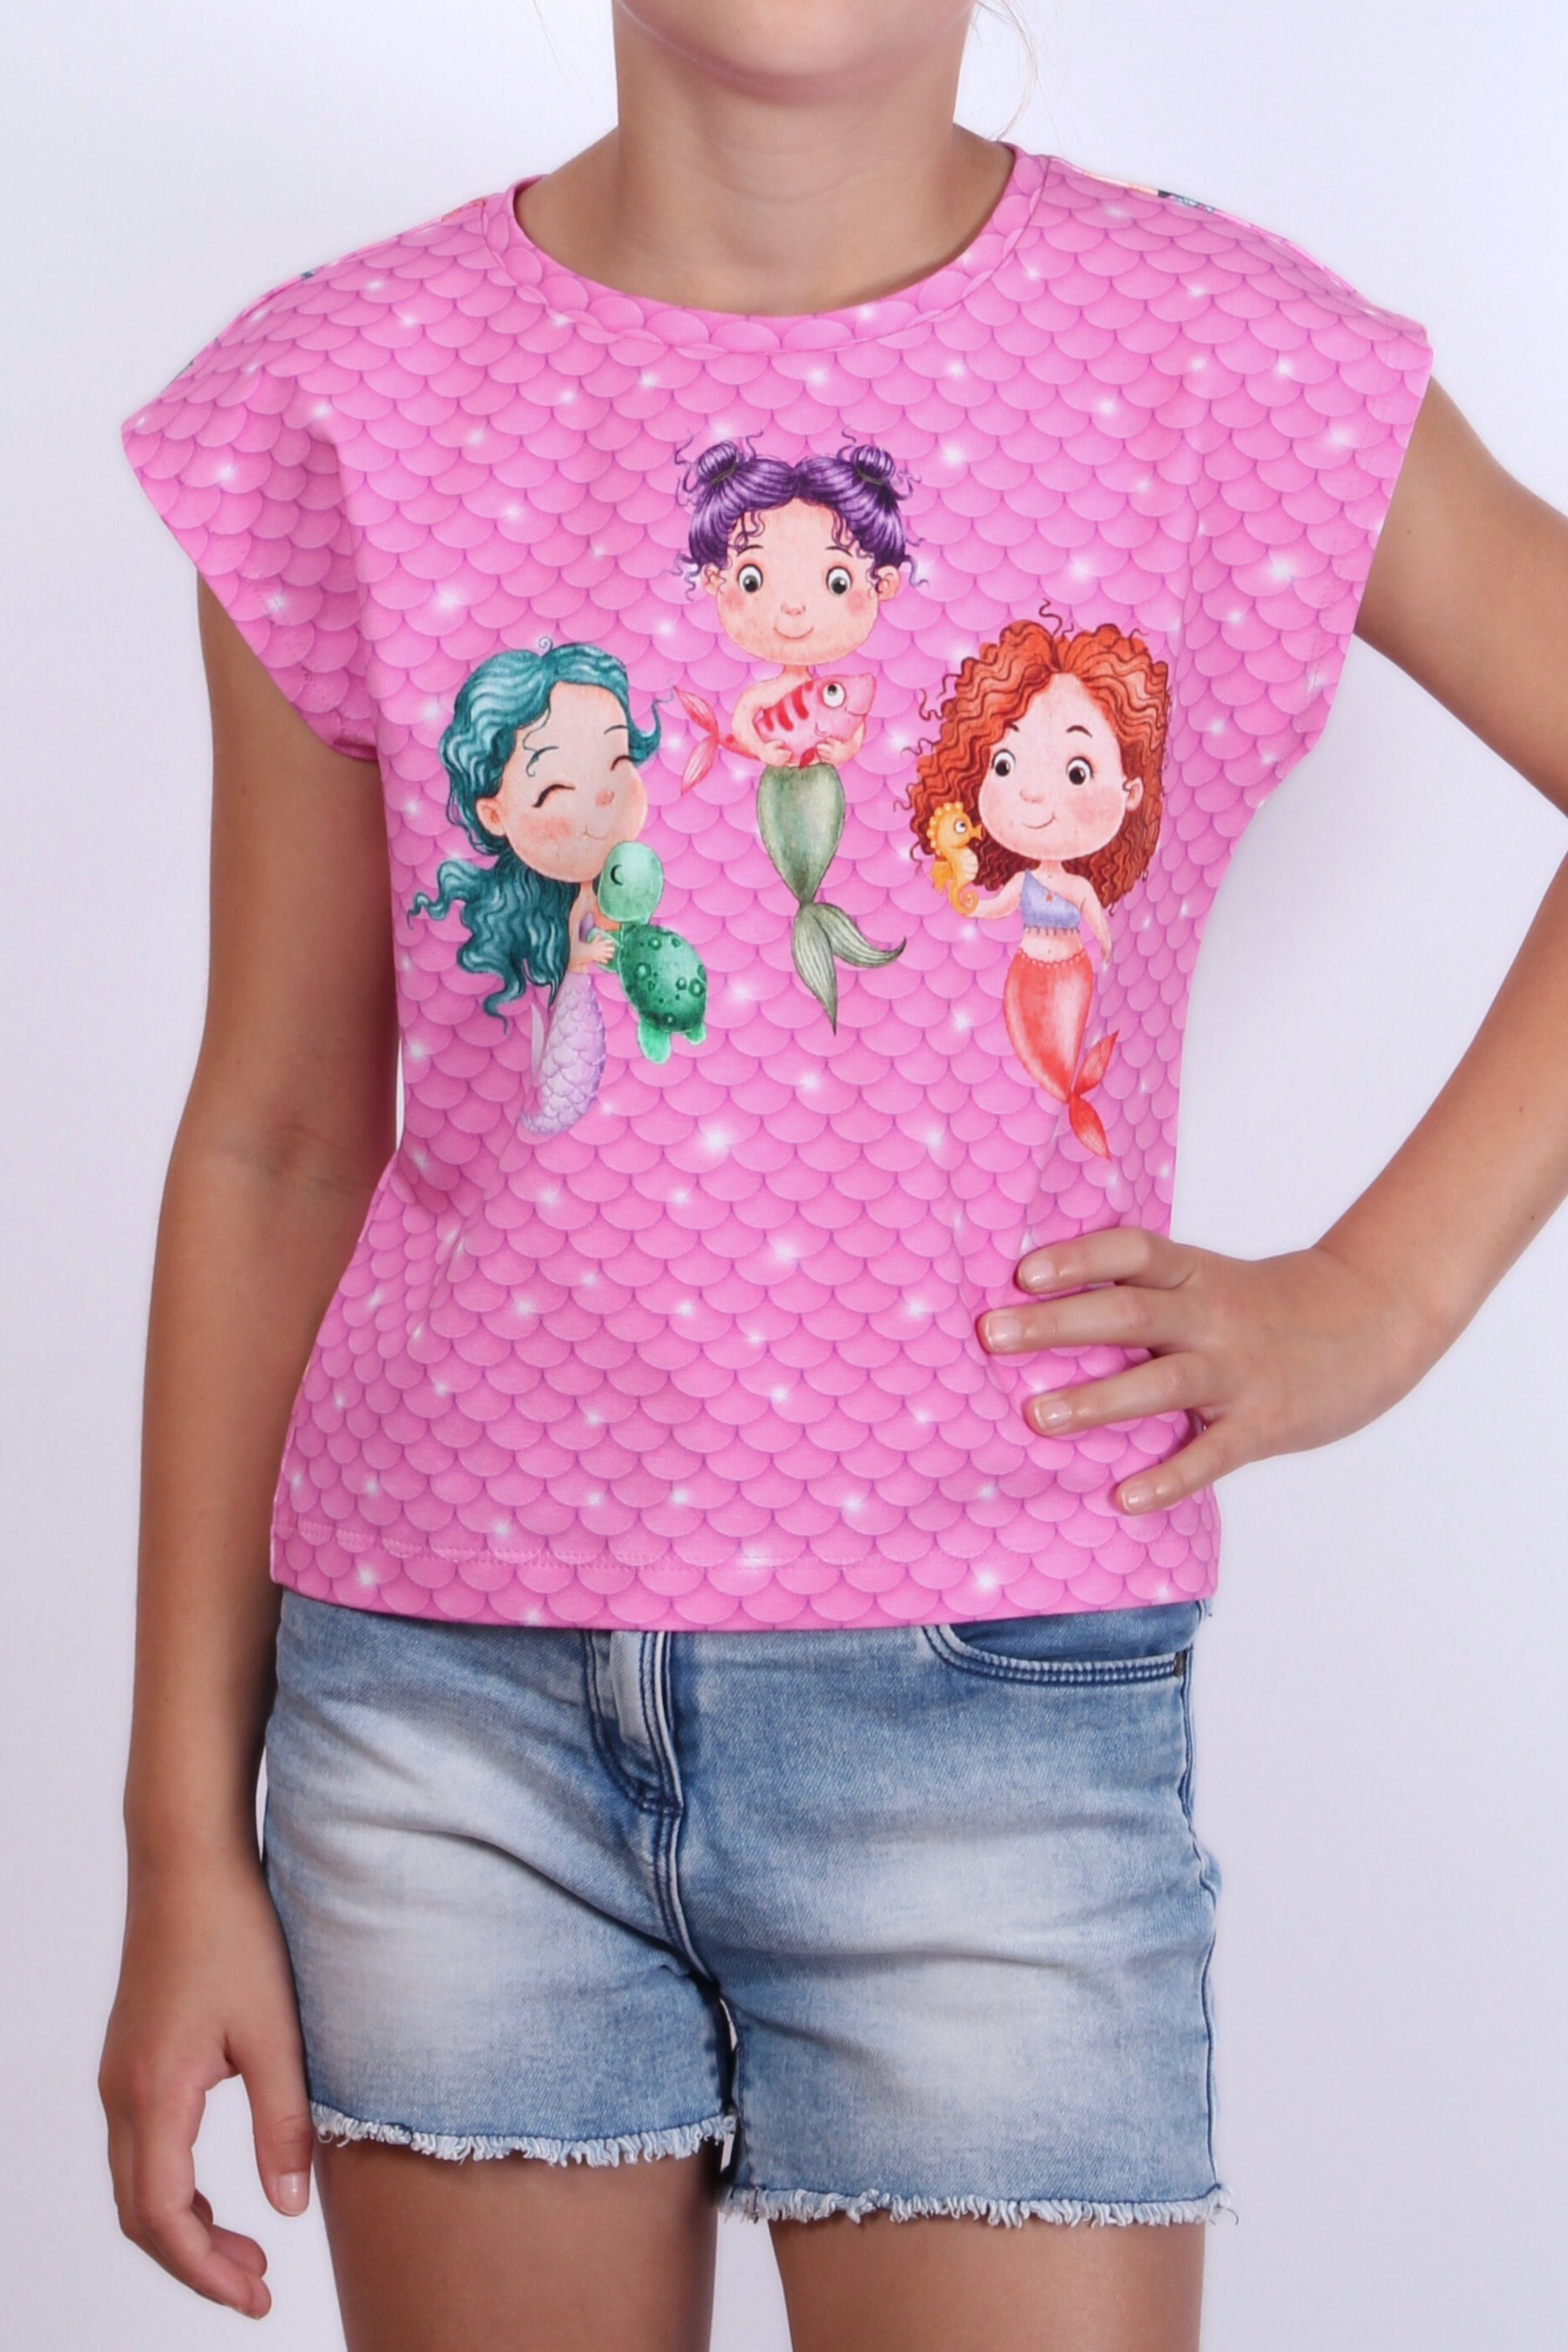 für T-Shirt Baumwolle, europäische Print-Shirt Motiv Mädchen Produktion Meerjungfrau coolismo